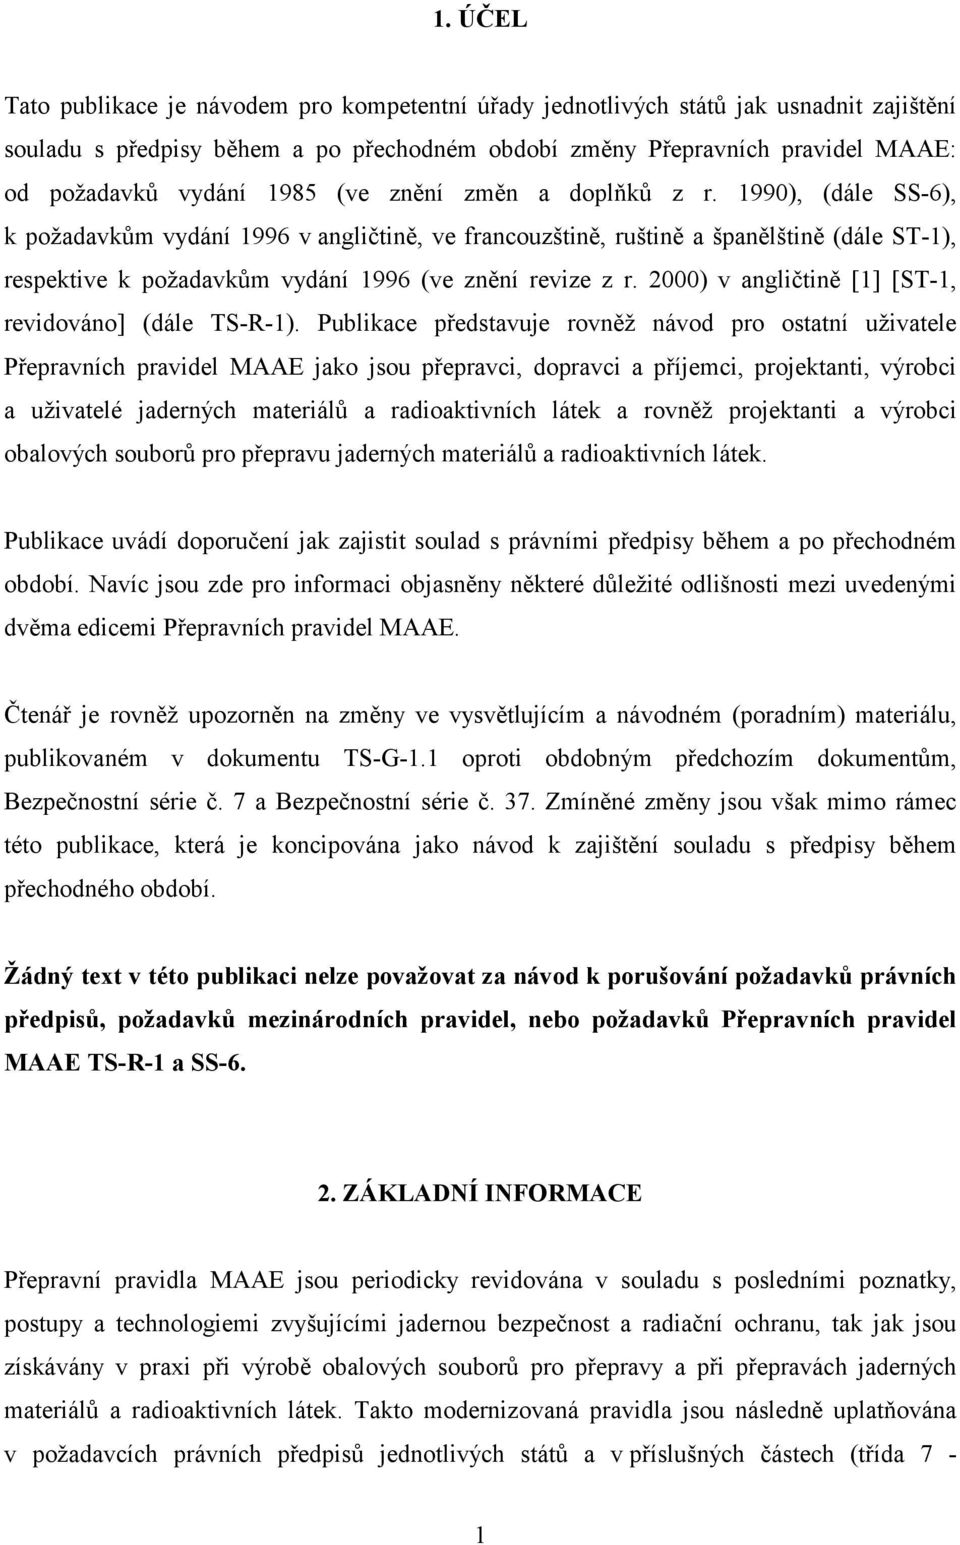 1990), (dále SS-6), k požadavkům vydání 1996 v angličtině, ve francouzštině, ruštině a španělštině (dále ST-1), respektive k požadavkům vydání 1996 (ve znění revize z r.